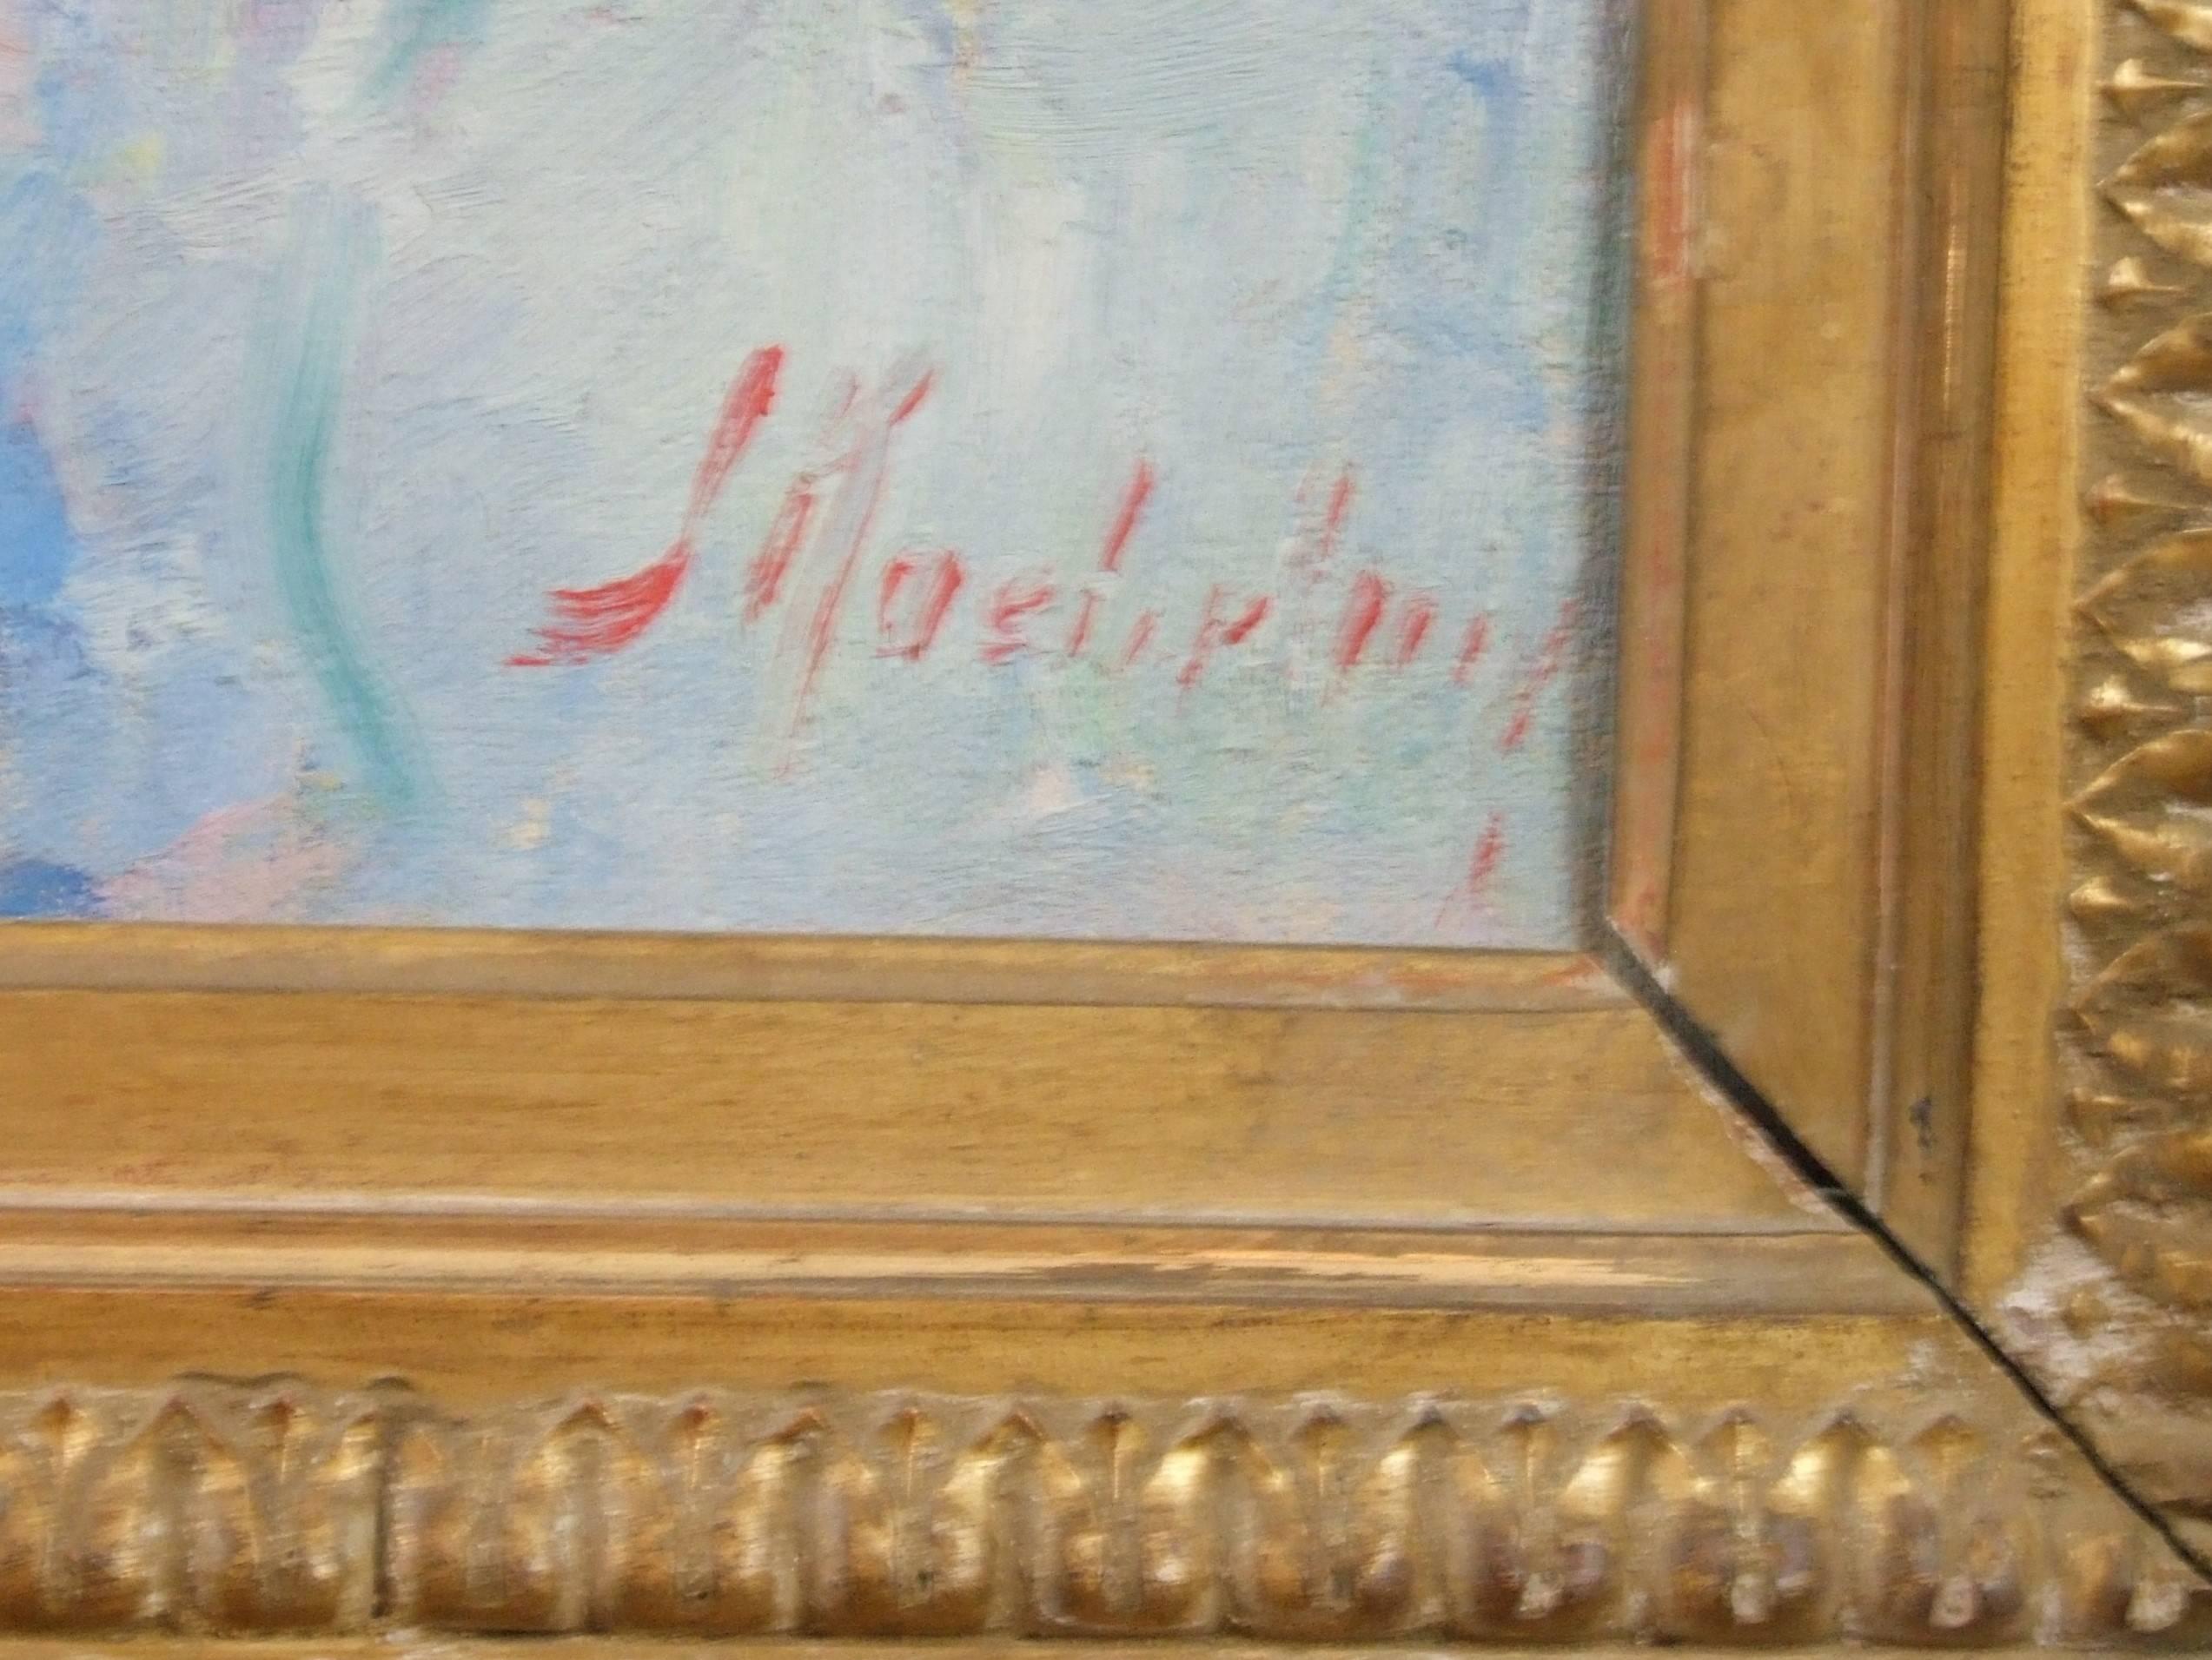 Huile sur toile de Suzanne Blanche KAEHRLING, représentant deux jeunes filles sur la plage. Le tableau est livré avec son cadre.

Suzanne Blanche KAEHRLING, peintre alsacienne, a vécu et travaillé à Paris. Elle peignait généralement des nus, avec